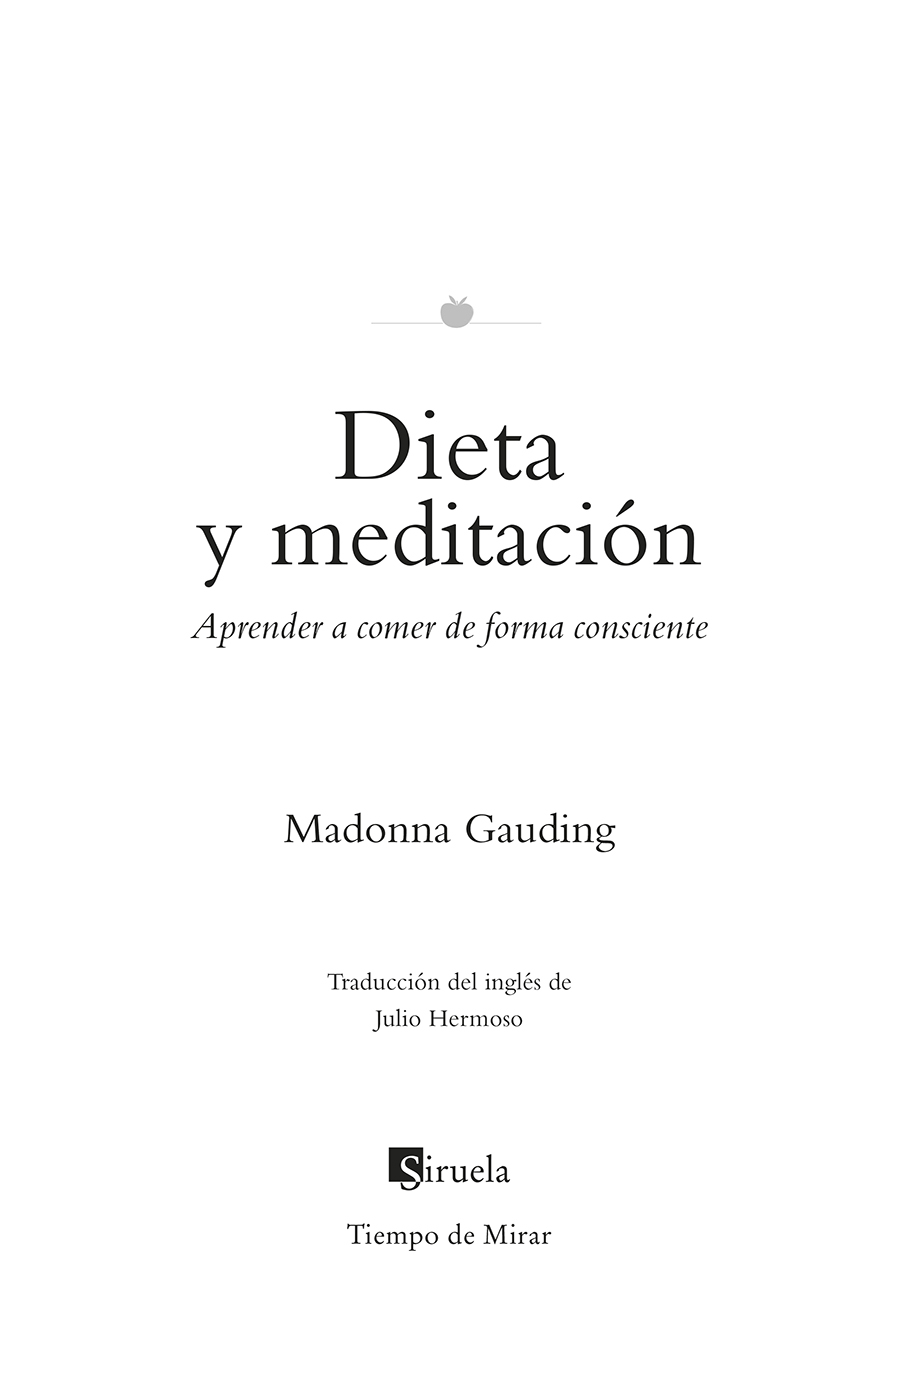 Portadilla: Dieta y meditación. Madonna Gaiding